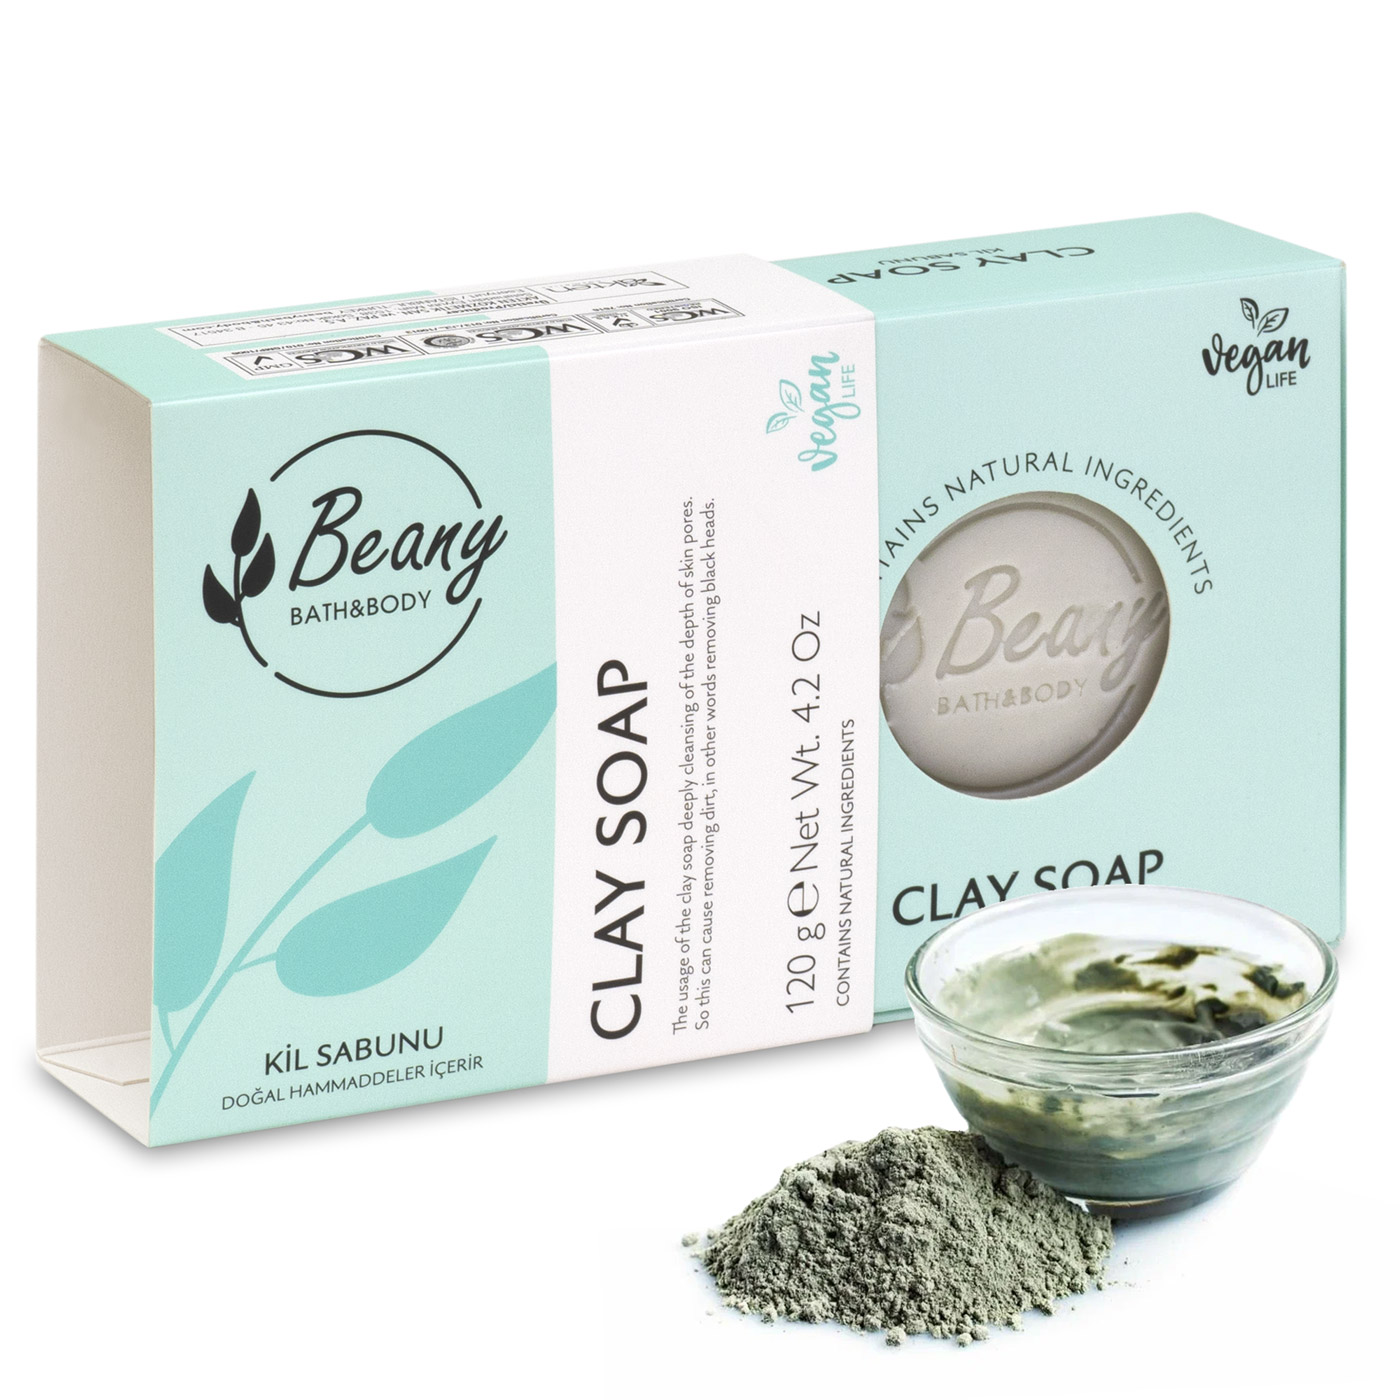 Мыло Beany твердое натуральное турецкое Clay Extract Soap с экстрактом глины мыло beany твердое натуральное турецкое daphne extract soap лавровое